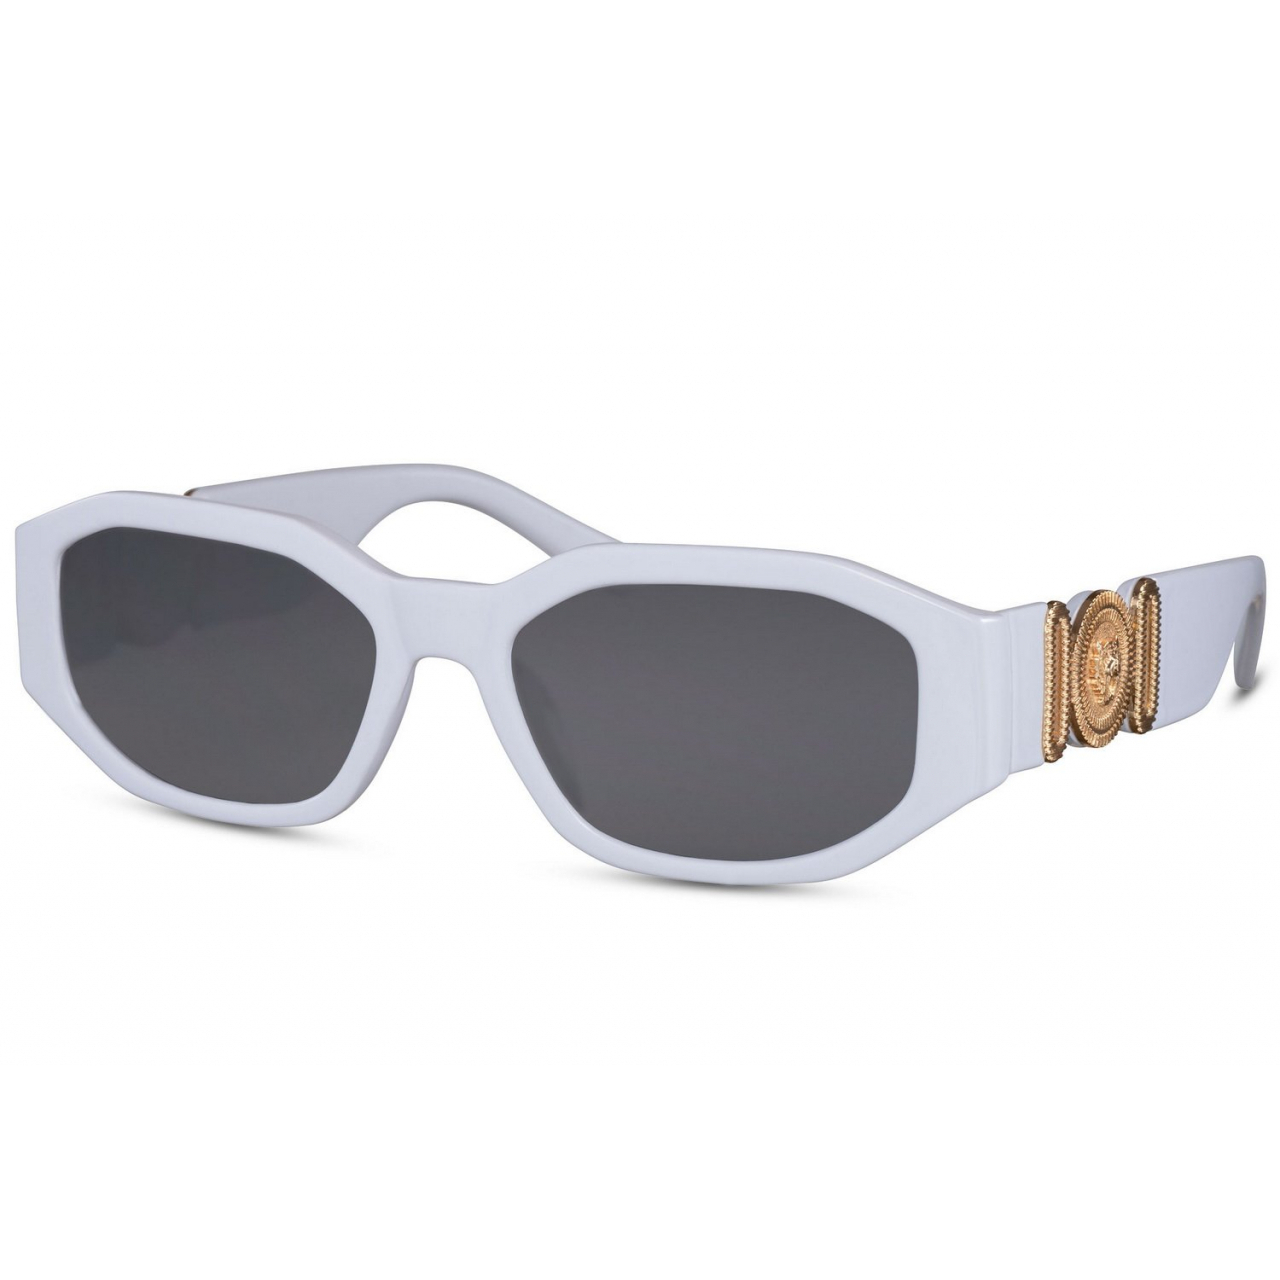 Sluneční brýle Solo Renesance - bílé